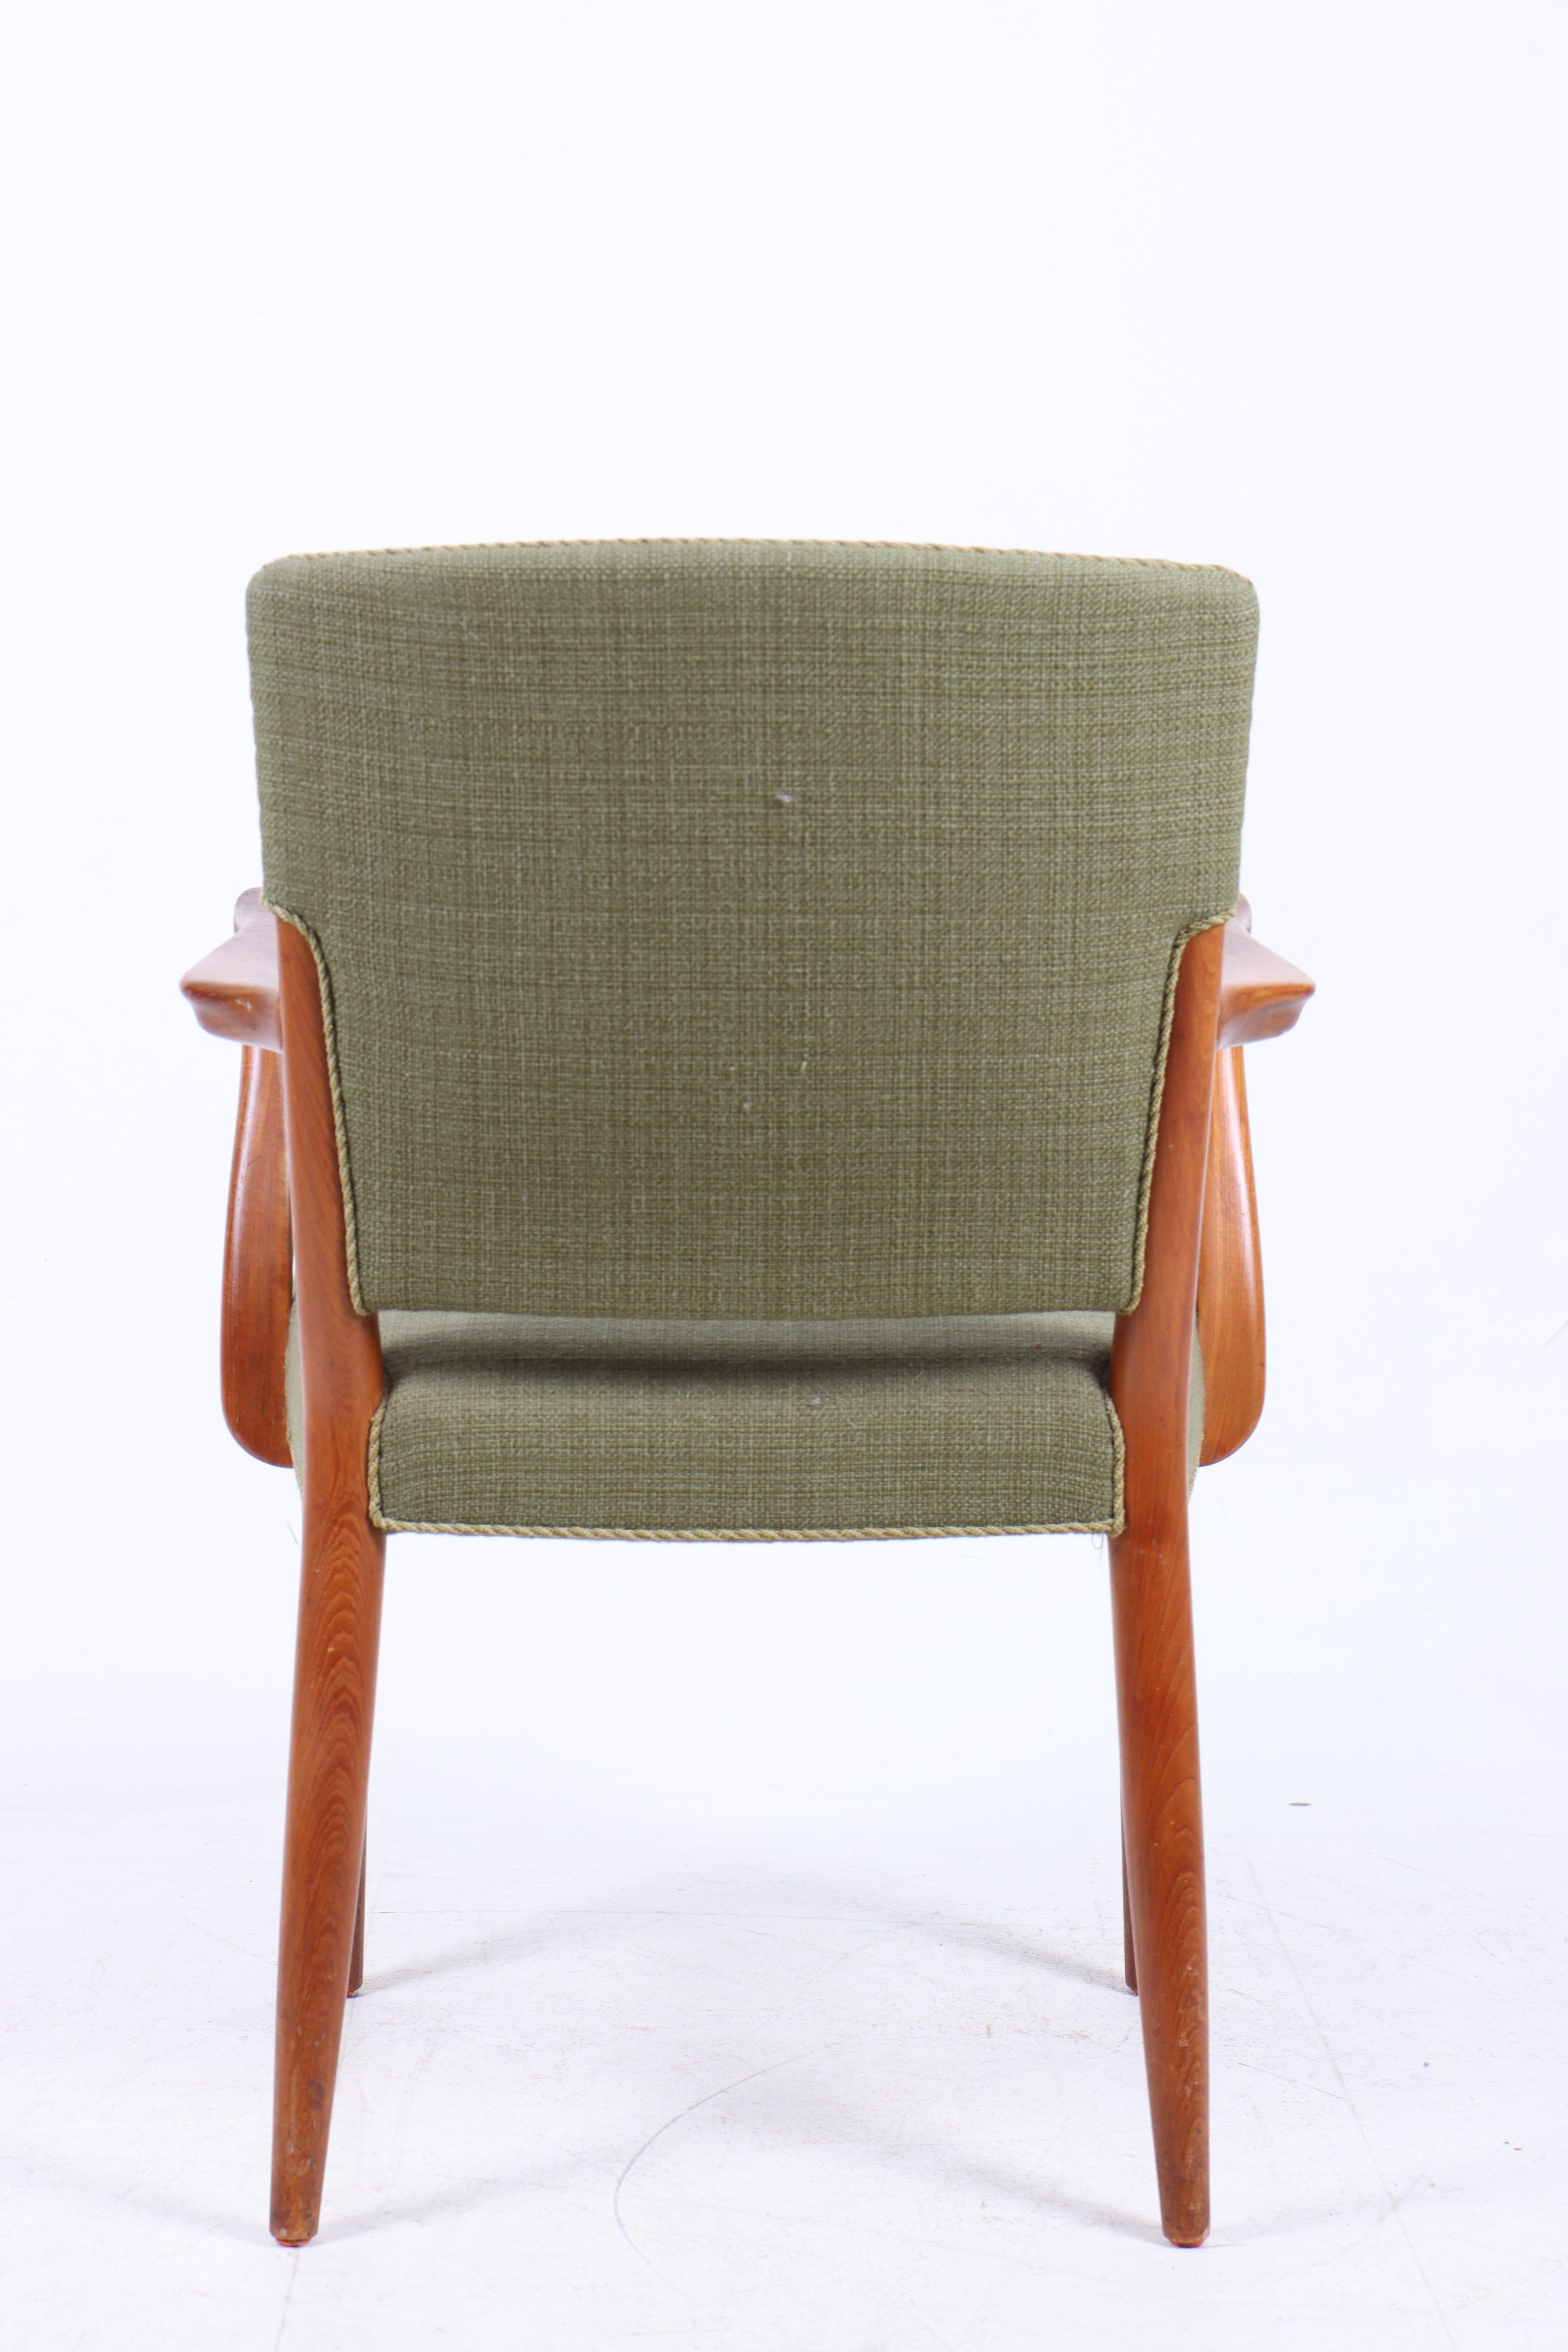 Chaise d'appoint en teck et tissu, conçue par Peter Hvidt & Orla Mølgaard pour l'ébéniste Gustav Bertelsen. Excellent état d'origine.